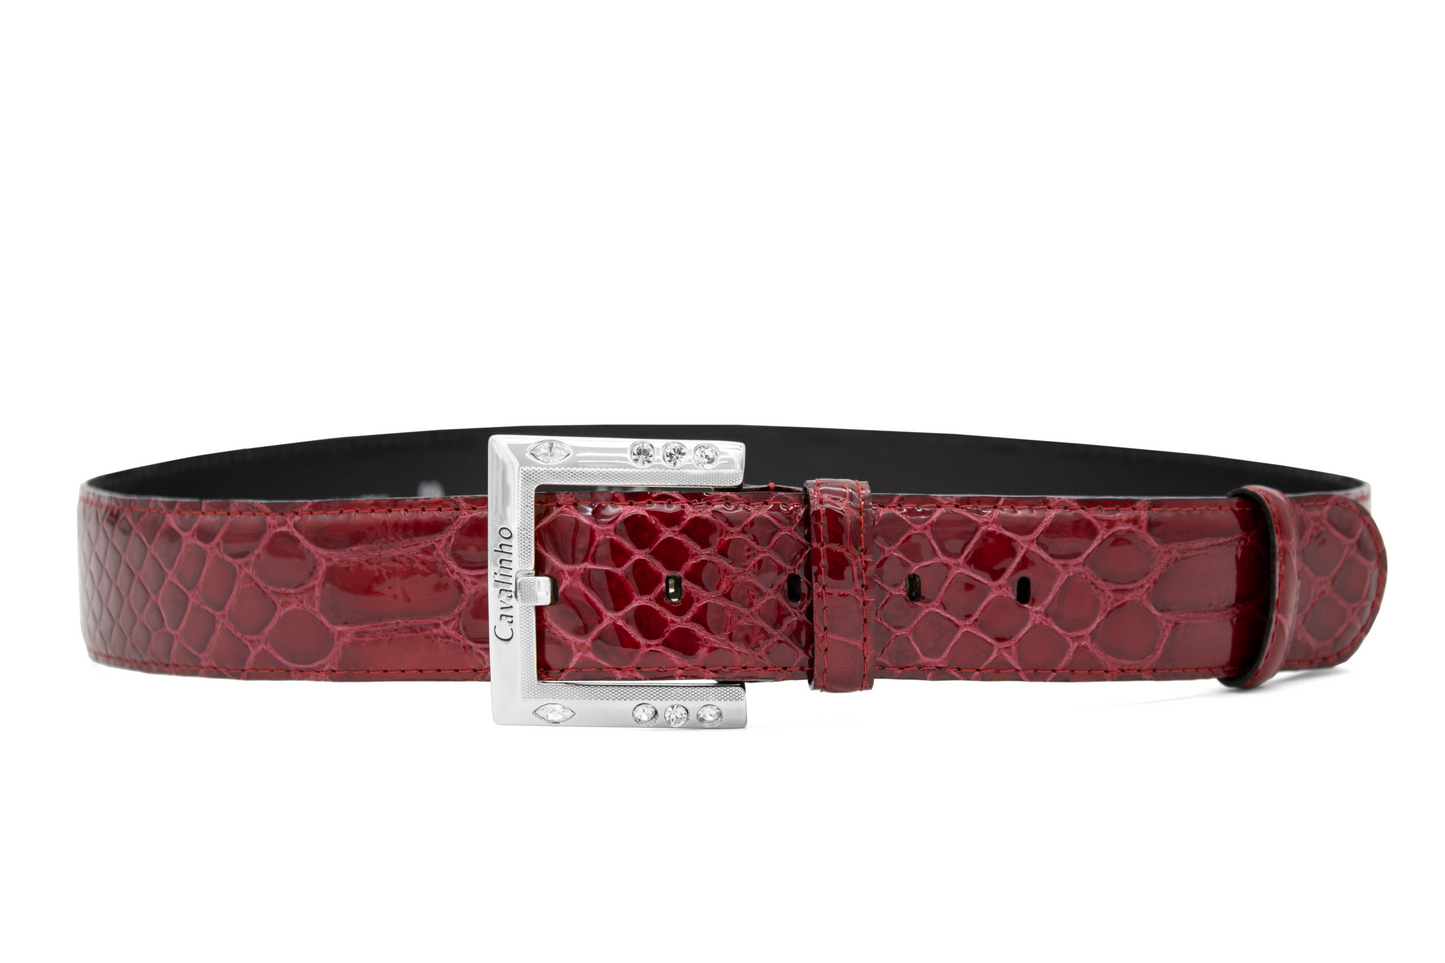 Cavalinho Gallop Patent Leather Belt - DarkRed Silver - 58010810.S.04_1